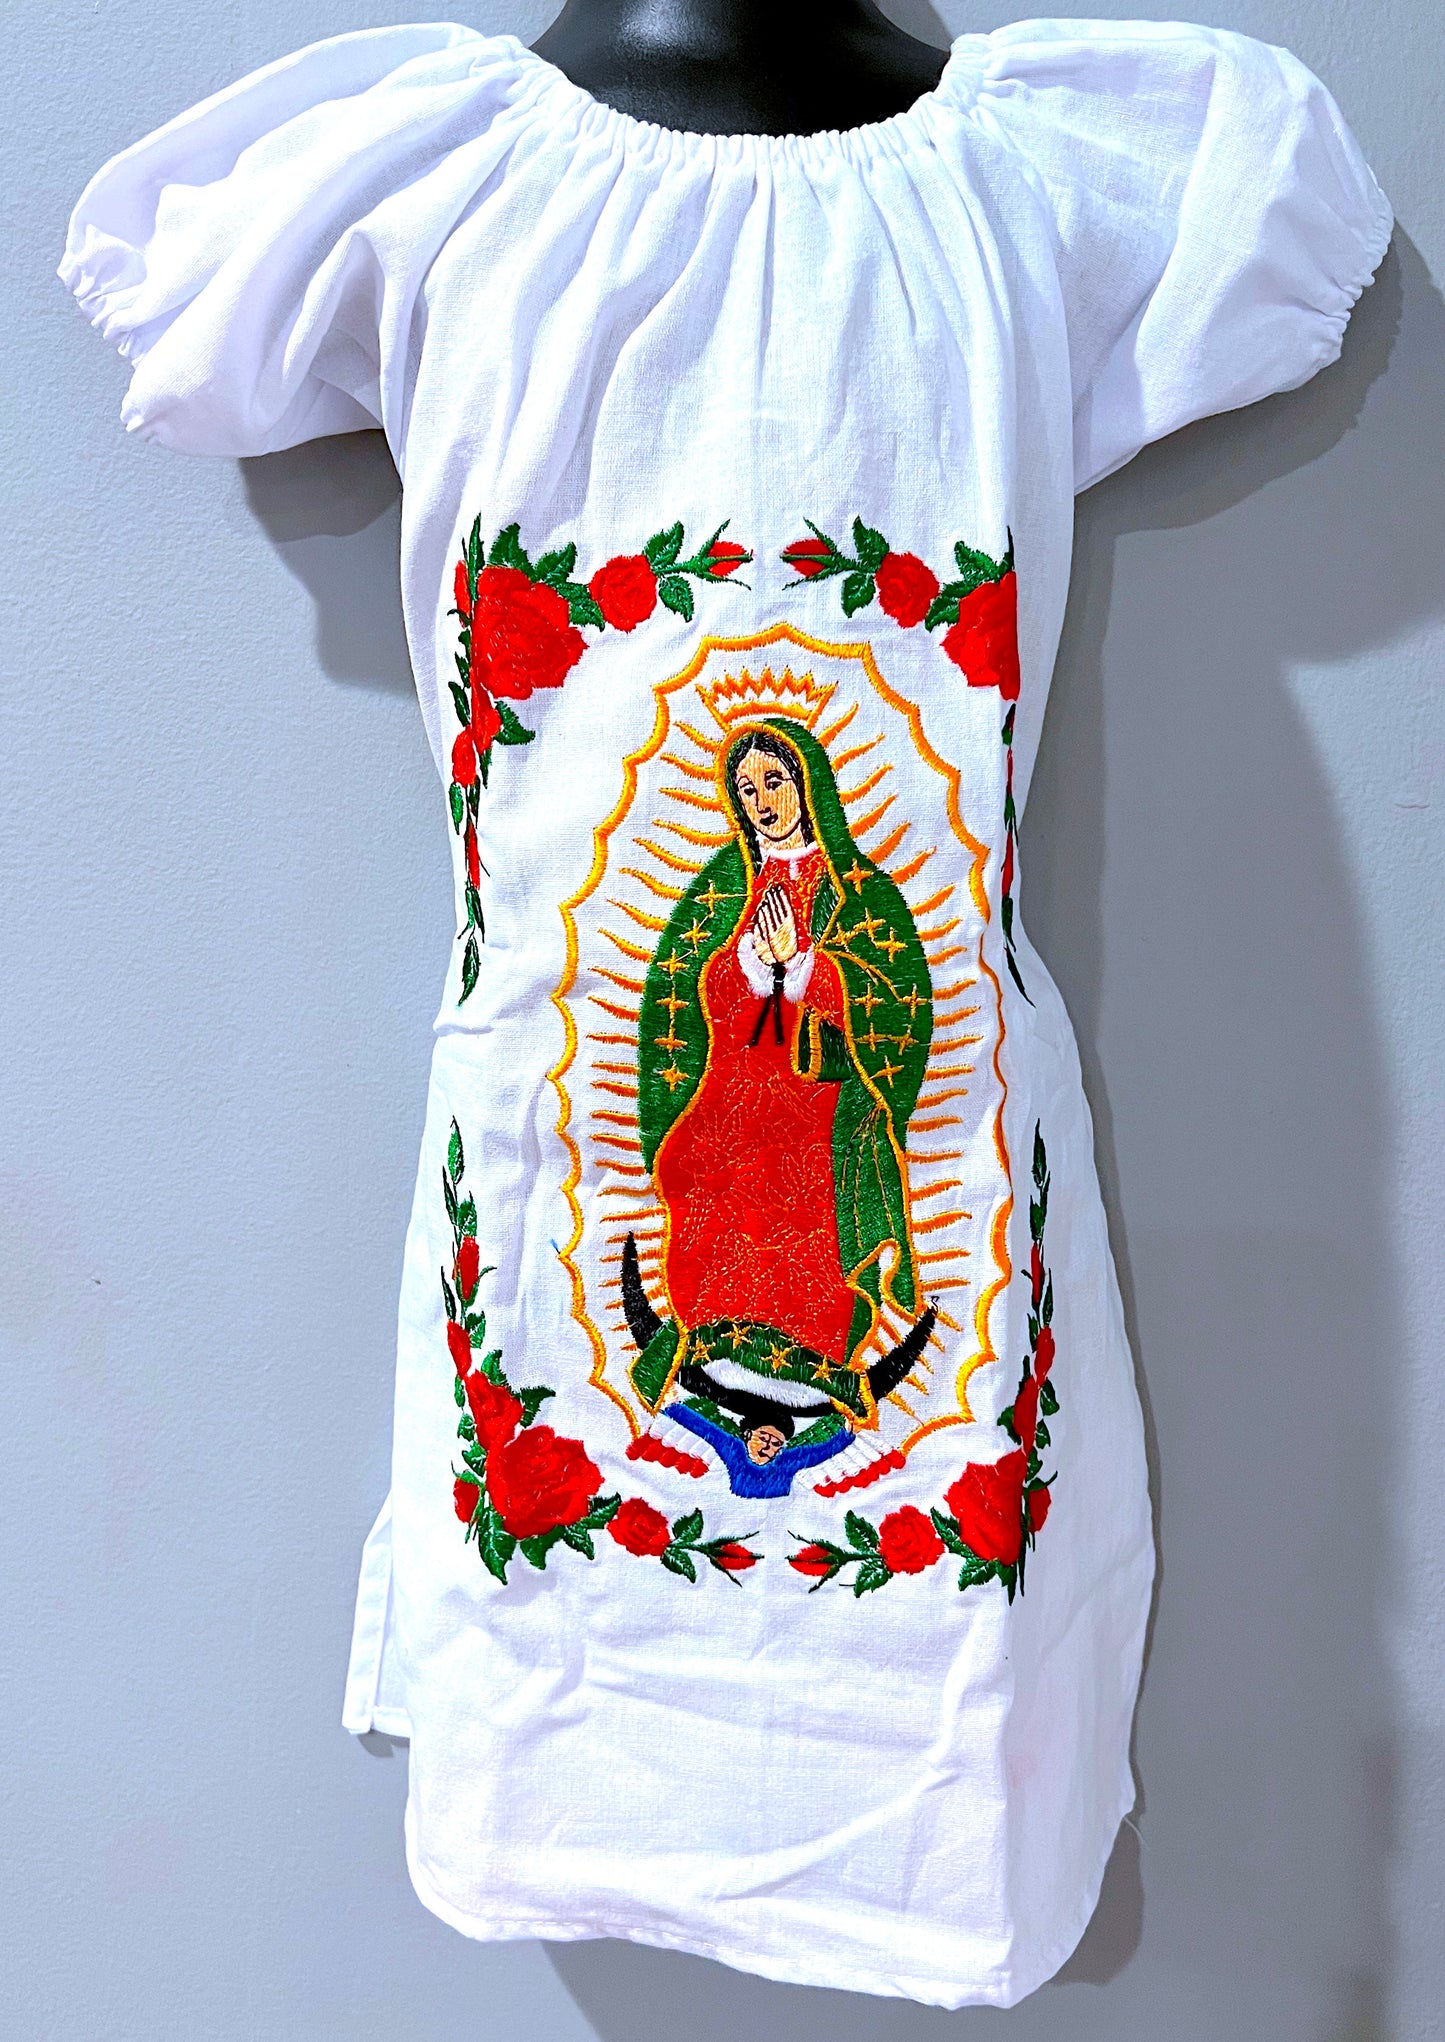 La Virgen Dress